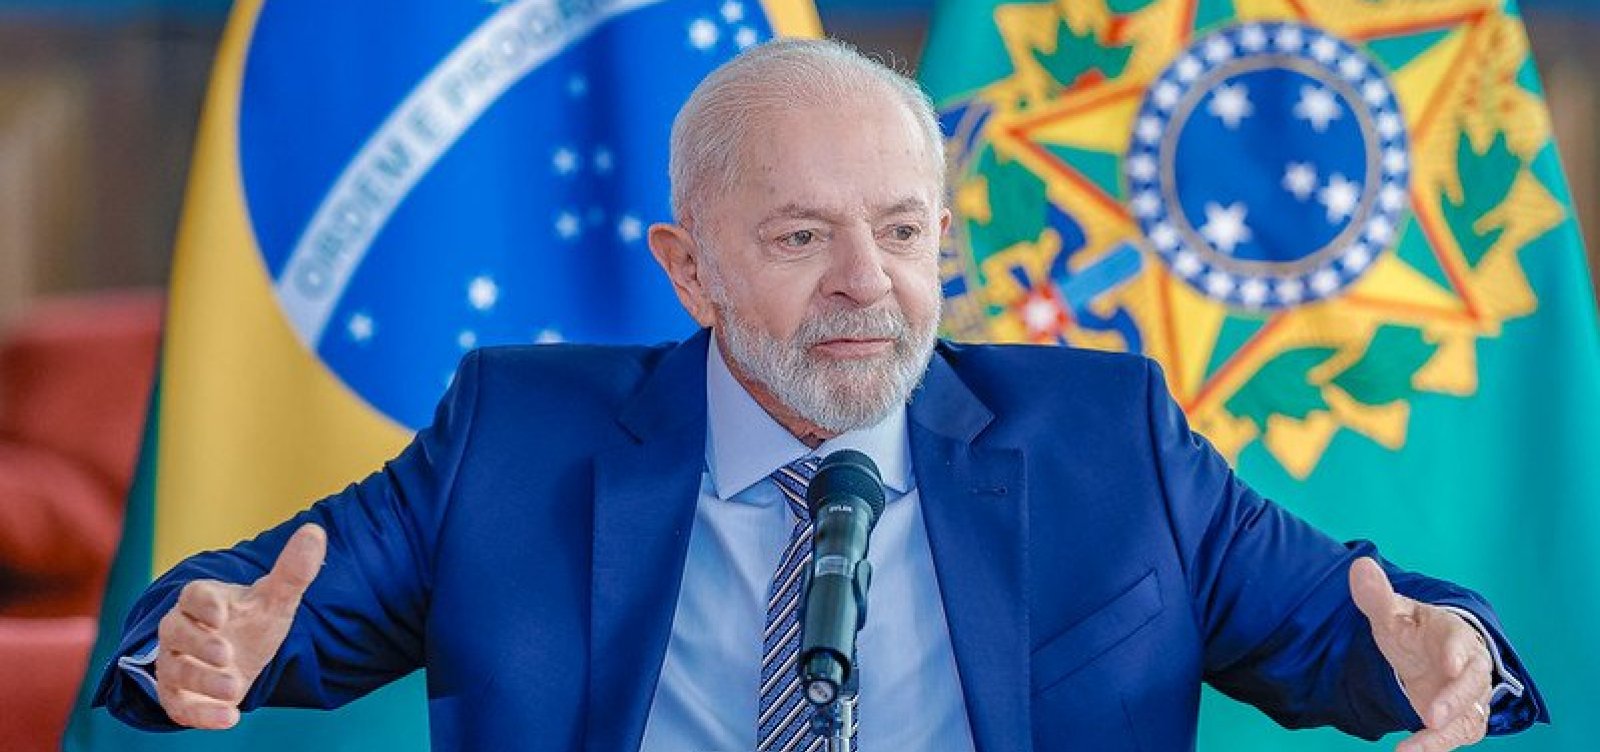 Relação vai ser civilizada independente de quem vencer corrida nos EUA, diz Lula